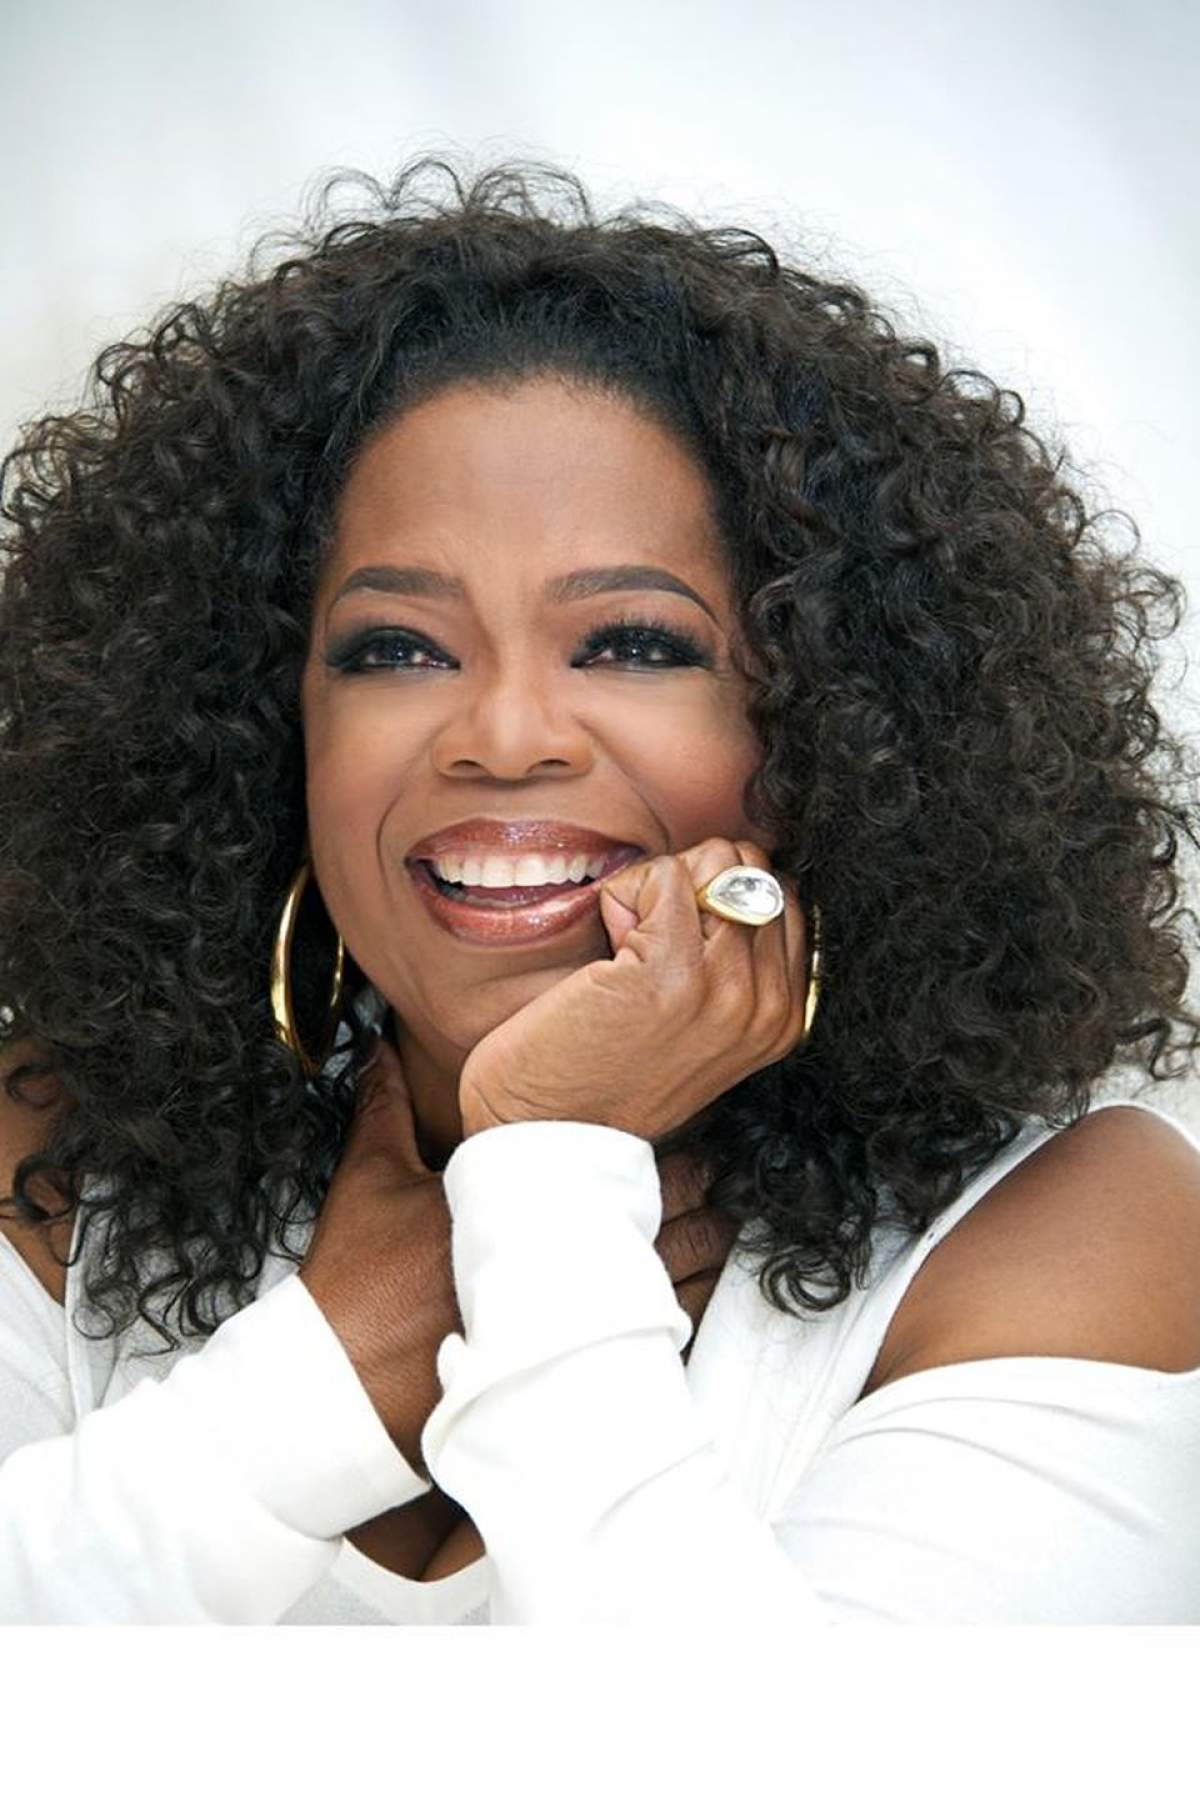 Rapperul care a făcut-o pe Oprah "curvă urâtă" îşi cere scuze public!